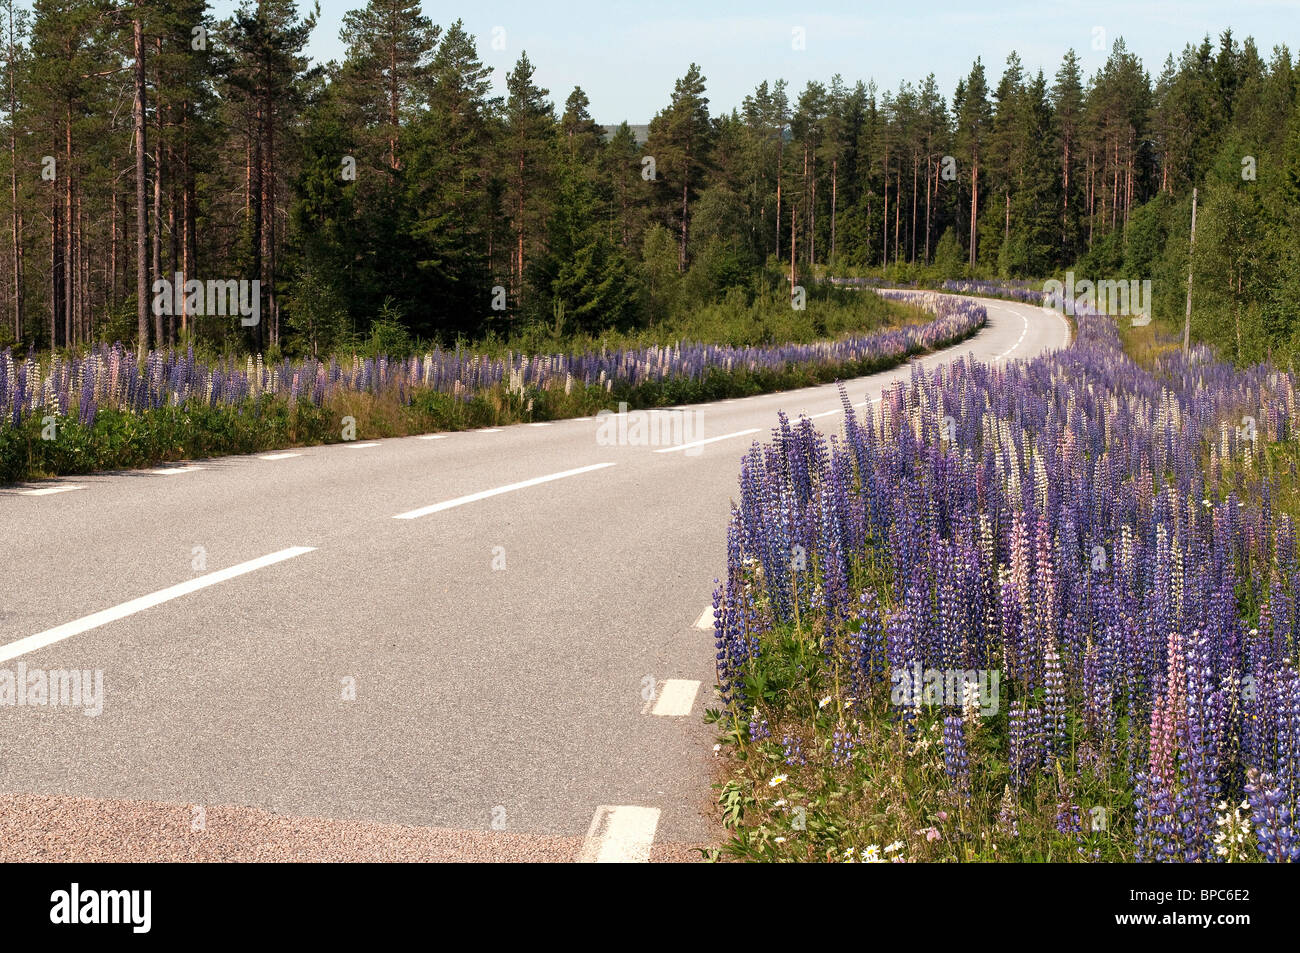 Jardin Le lupin (Lupinus polyphyllus), la floraison le long d'une route en Suède. Banque D'Images